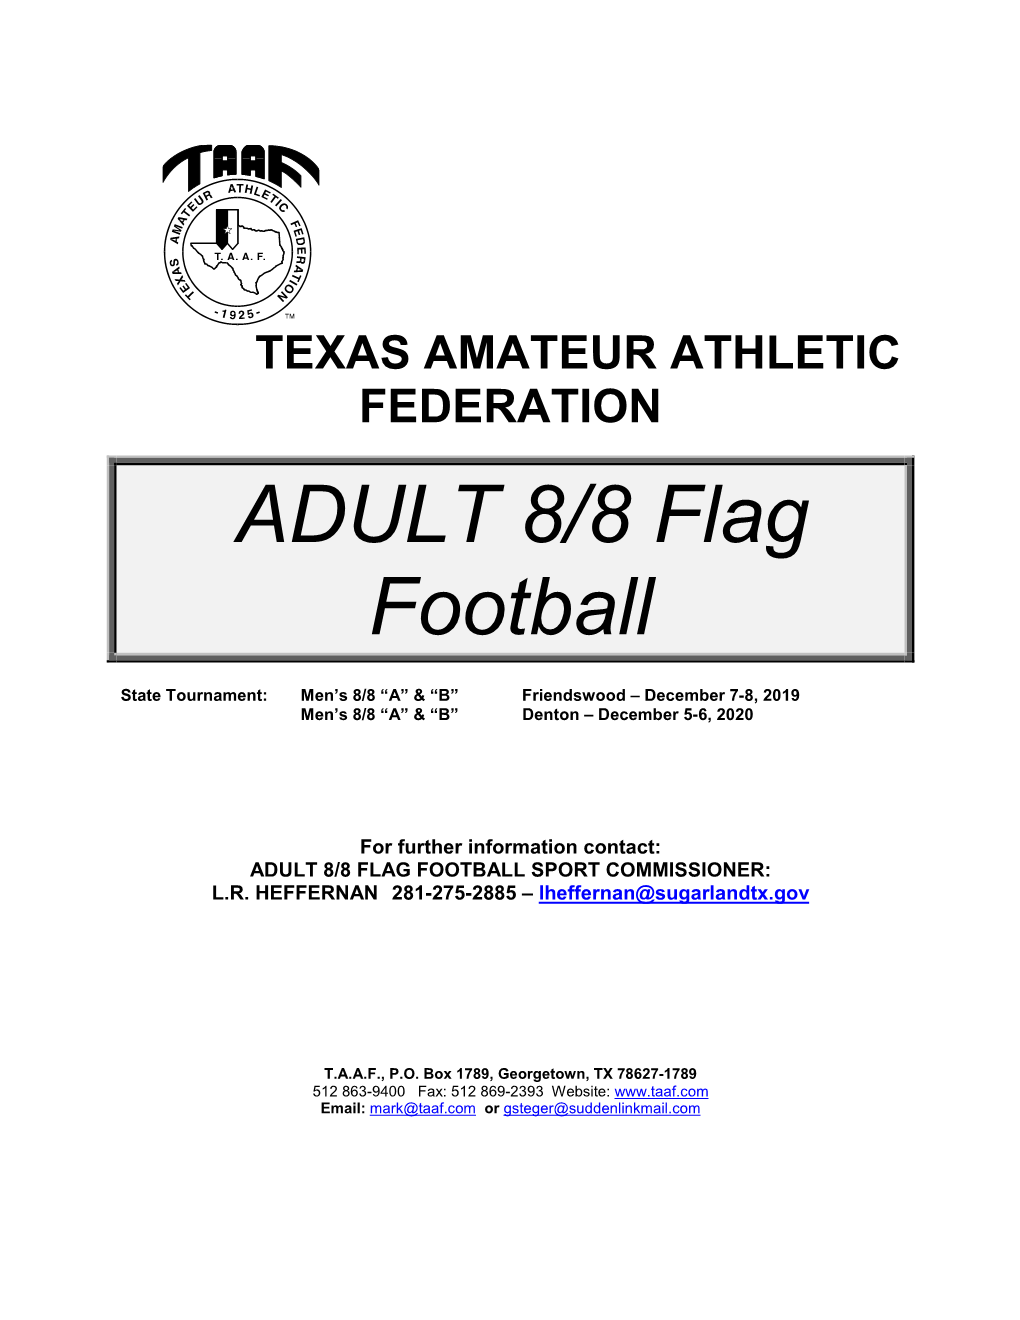 ADULT 8/8 Flag Football